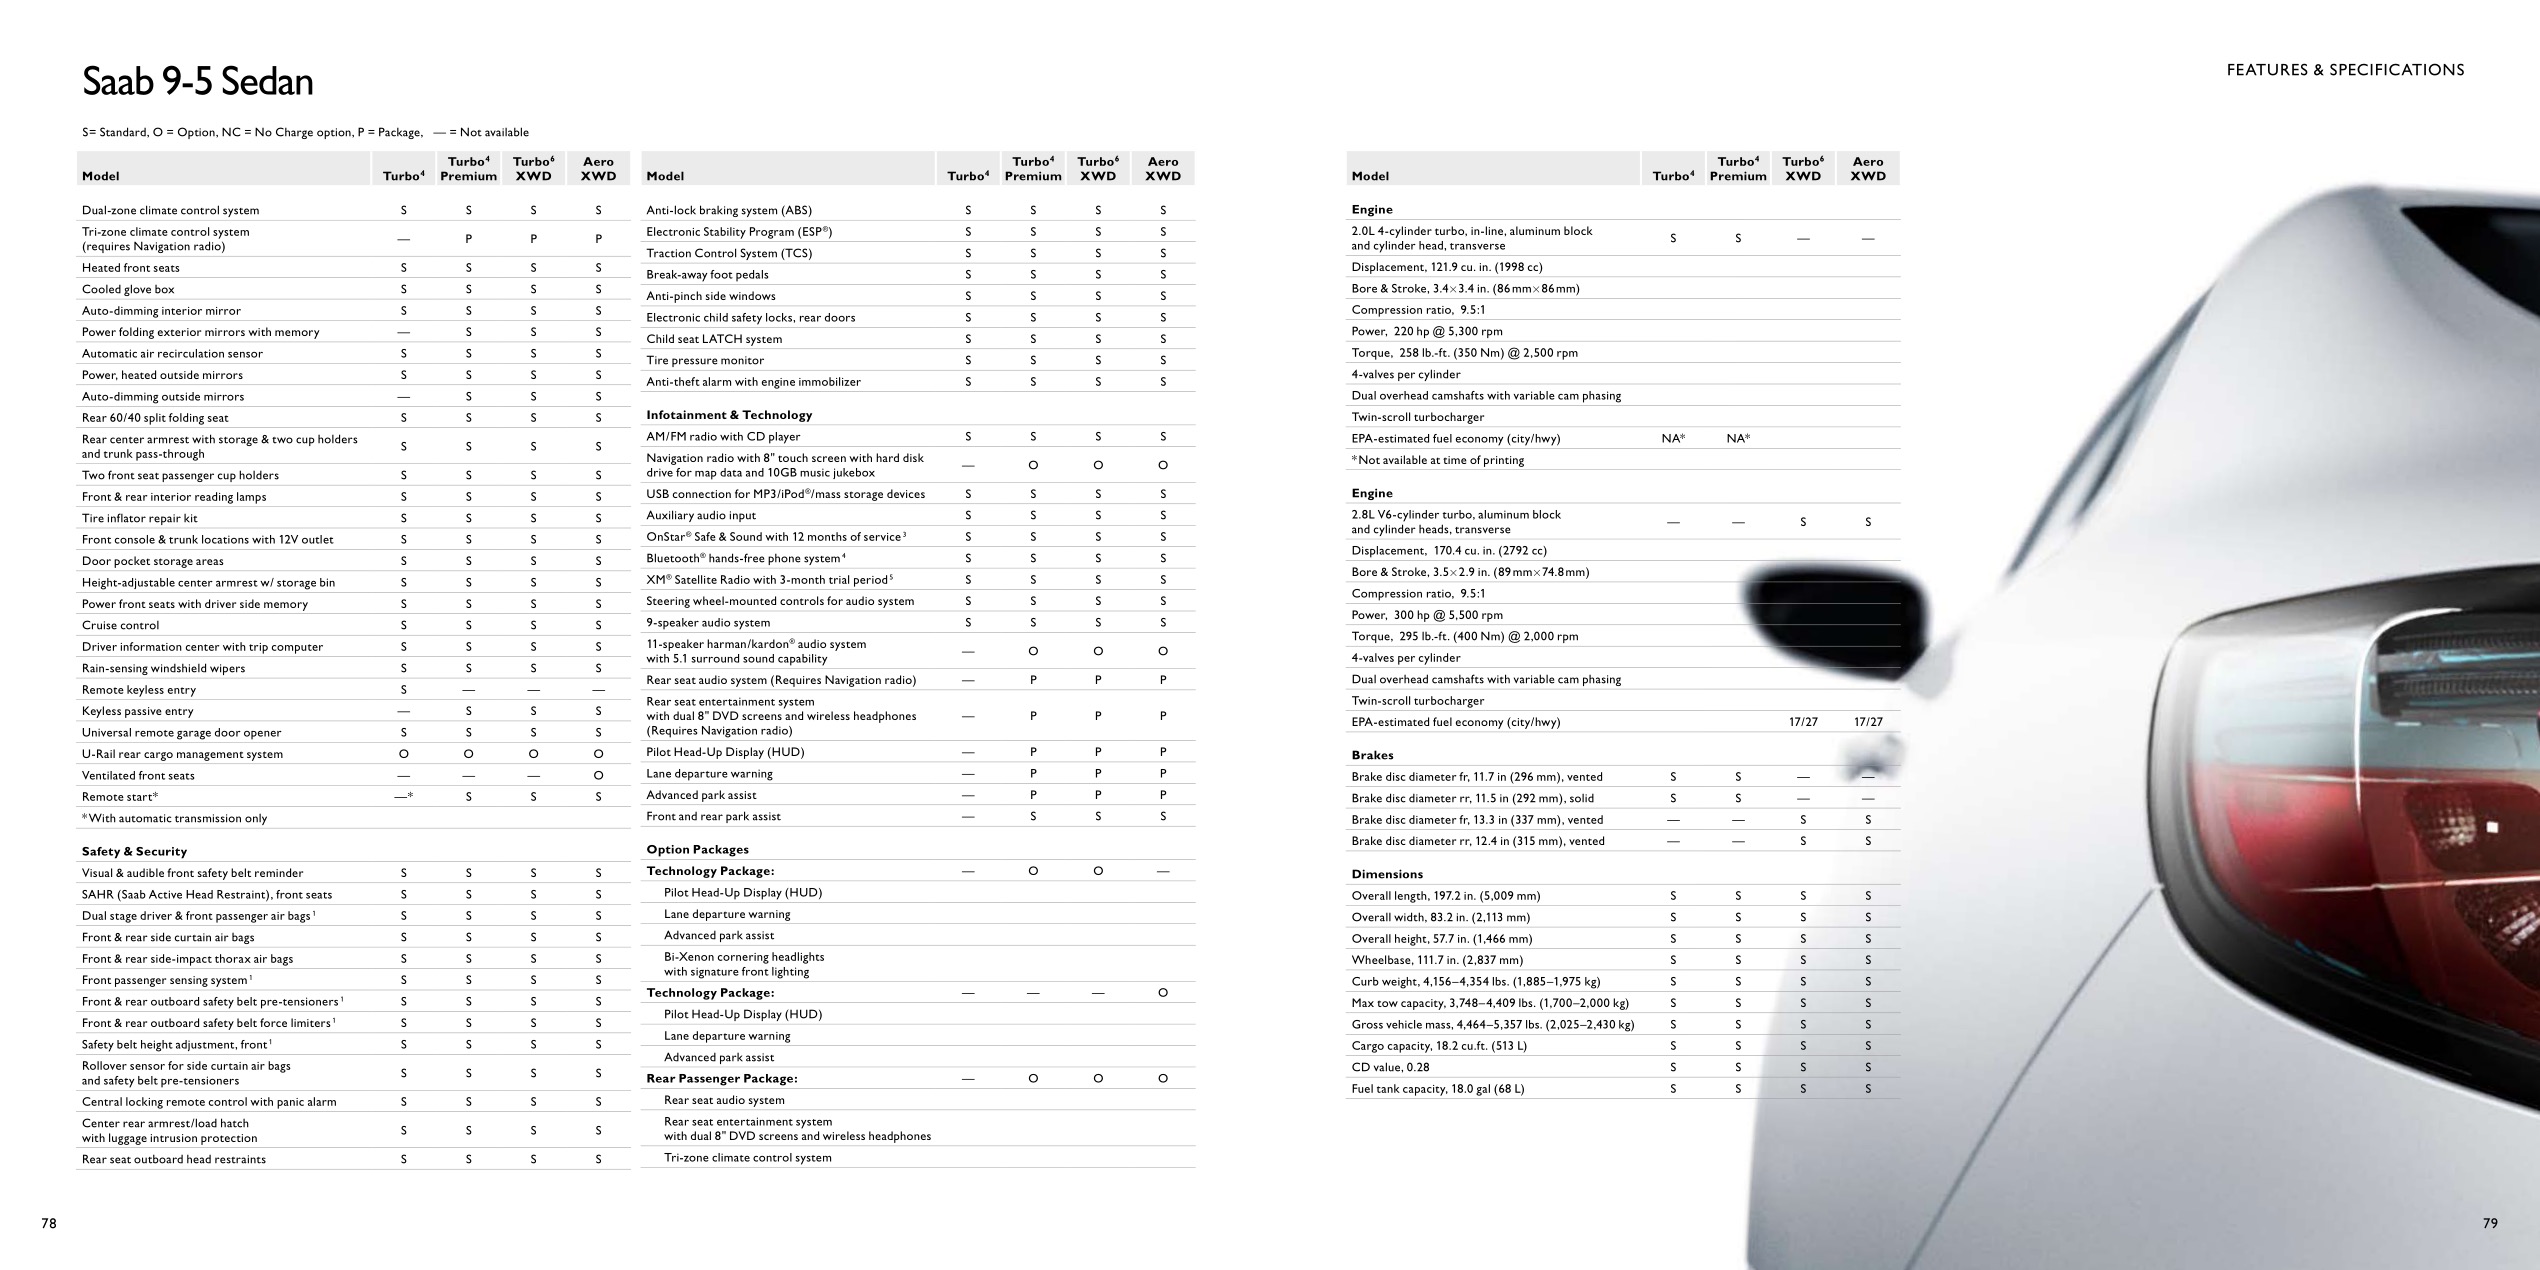 2011 SAAB Full-Line Brochure Page 11